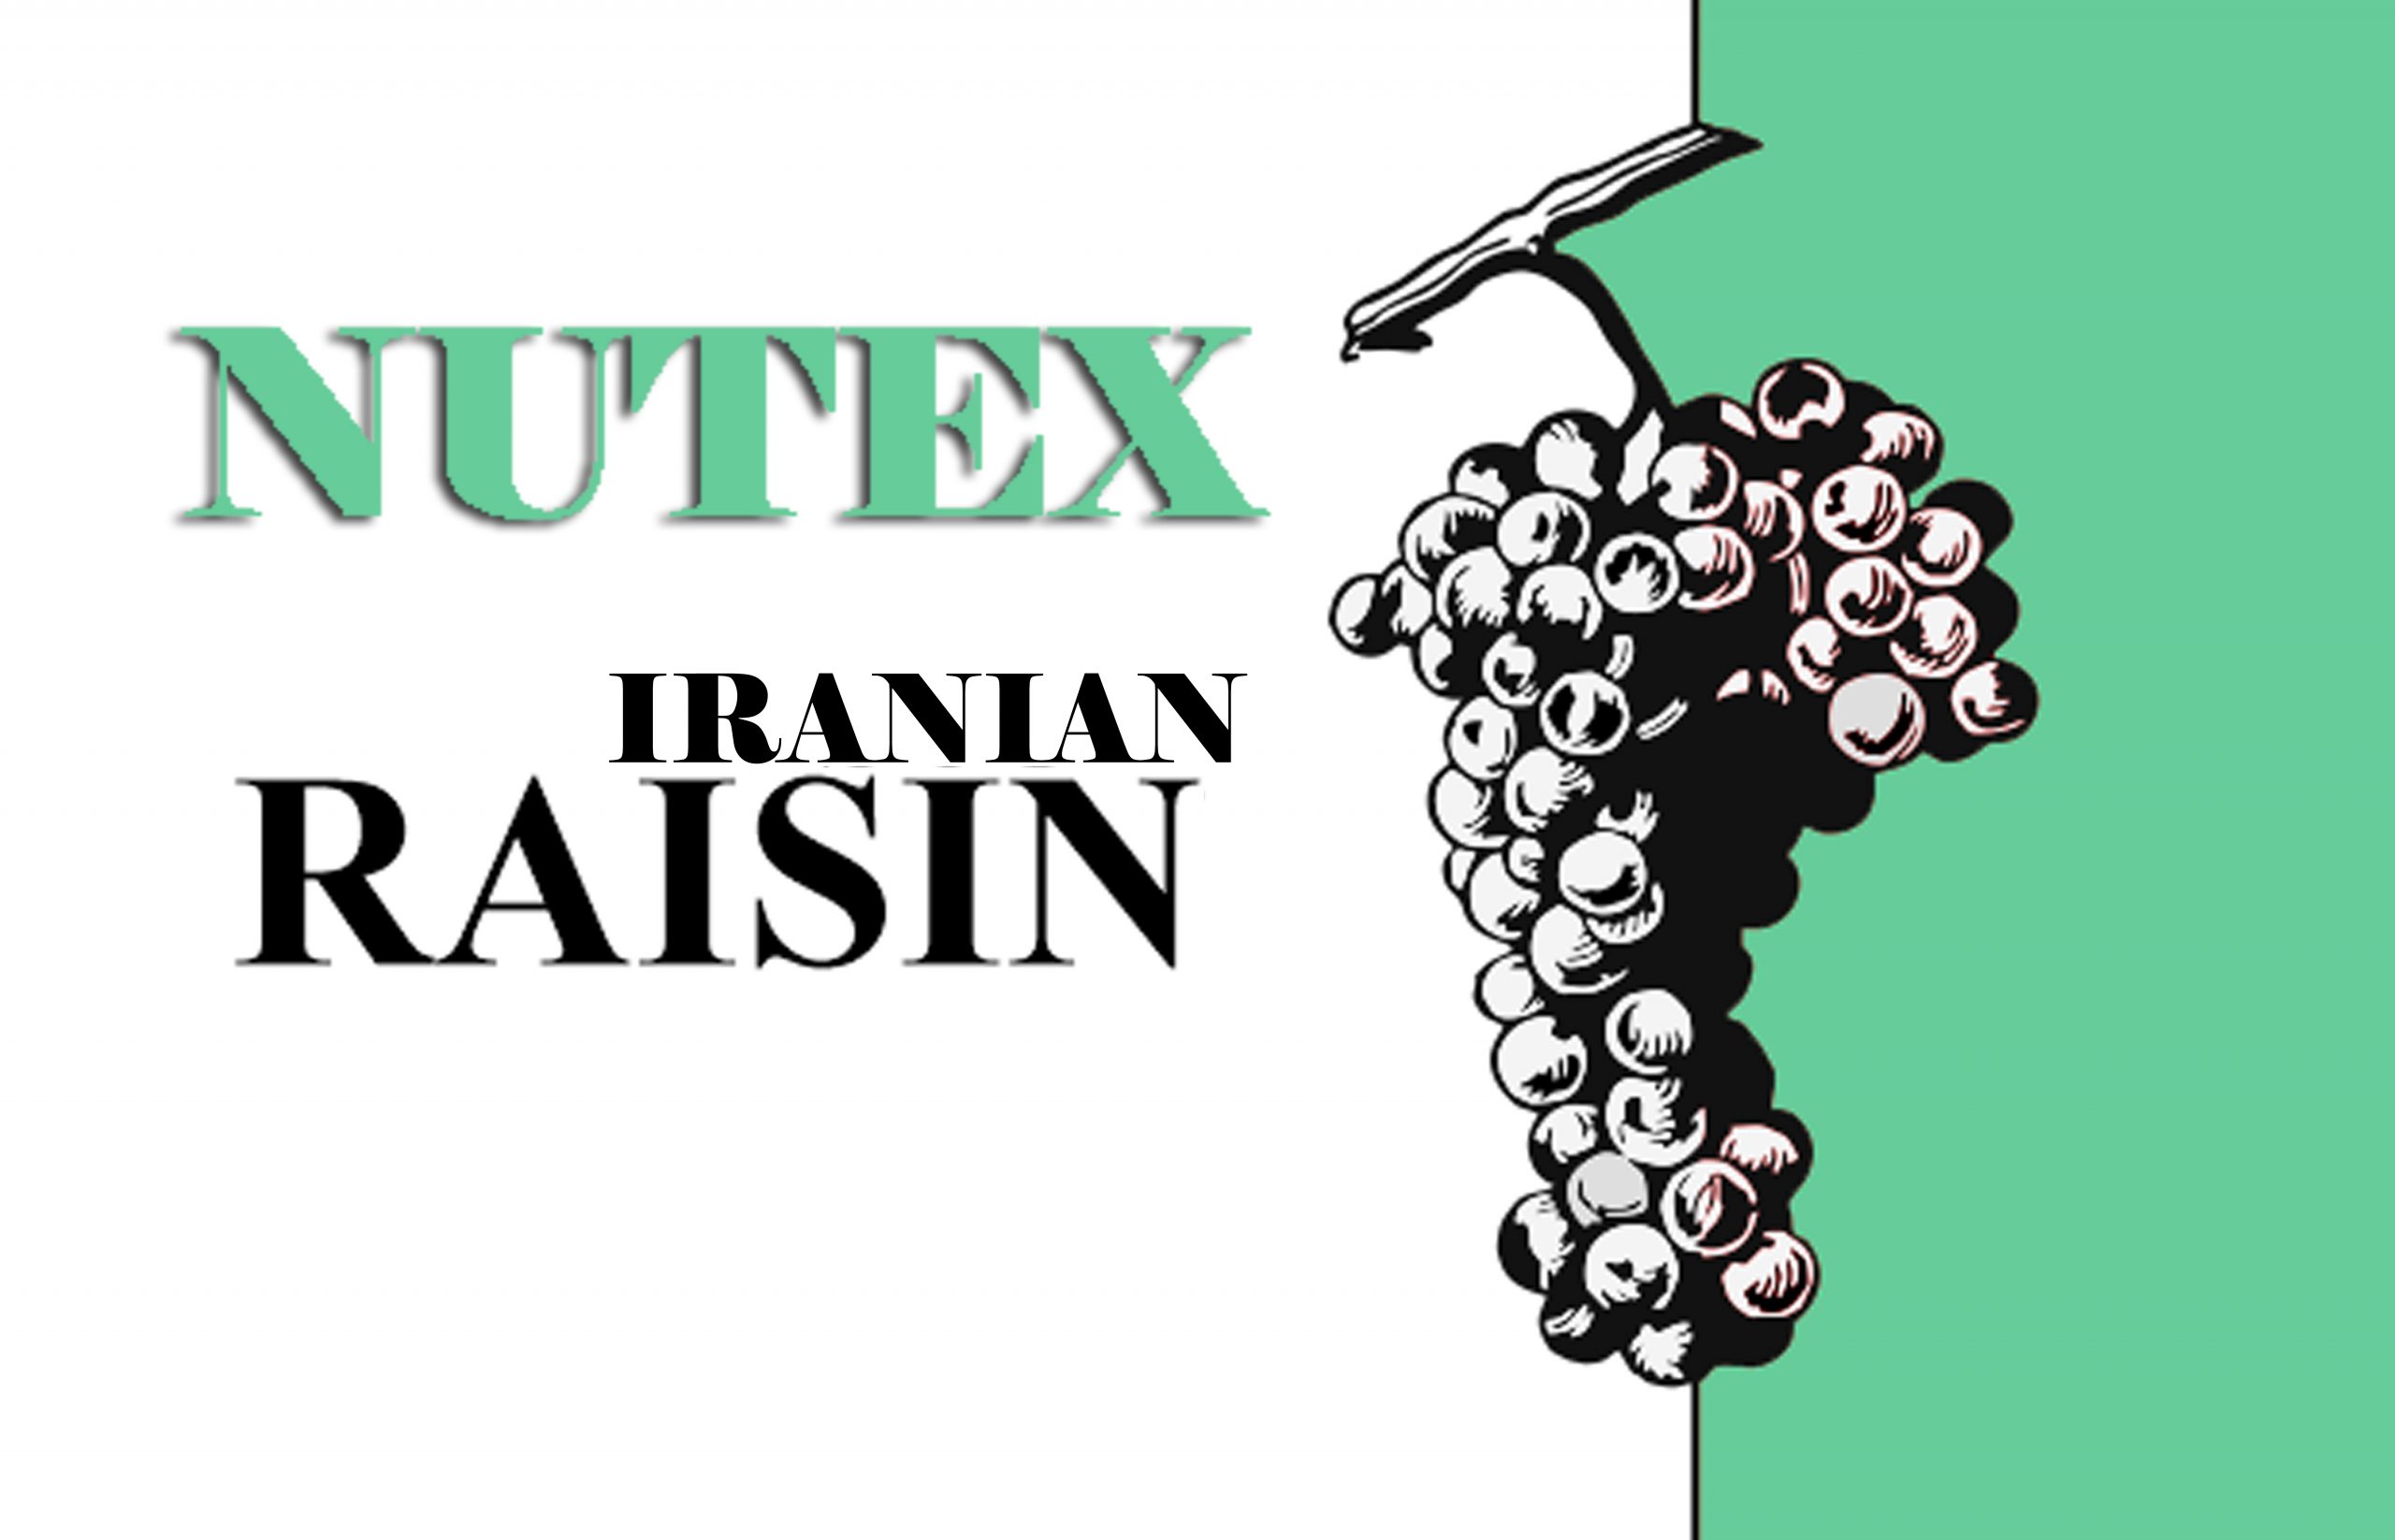 Raisin Factory - The Best Producer of Iranian Raisins - Nutex Company